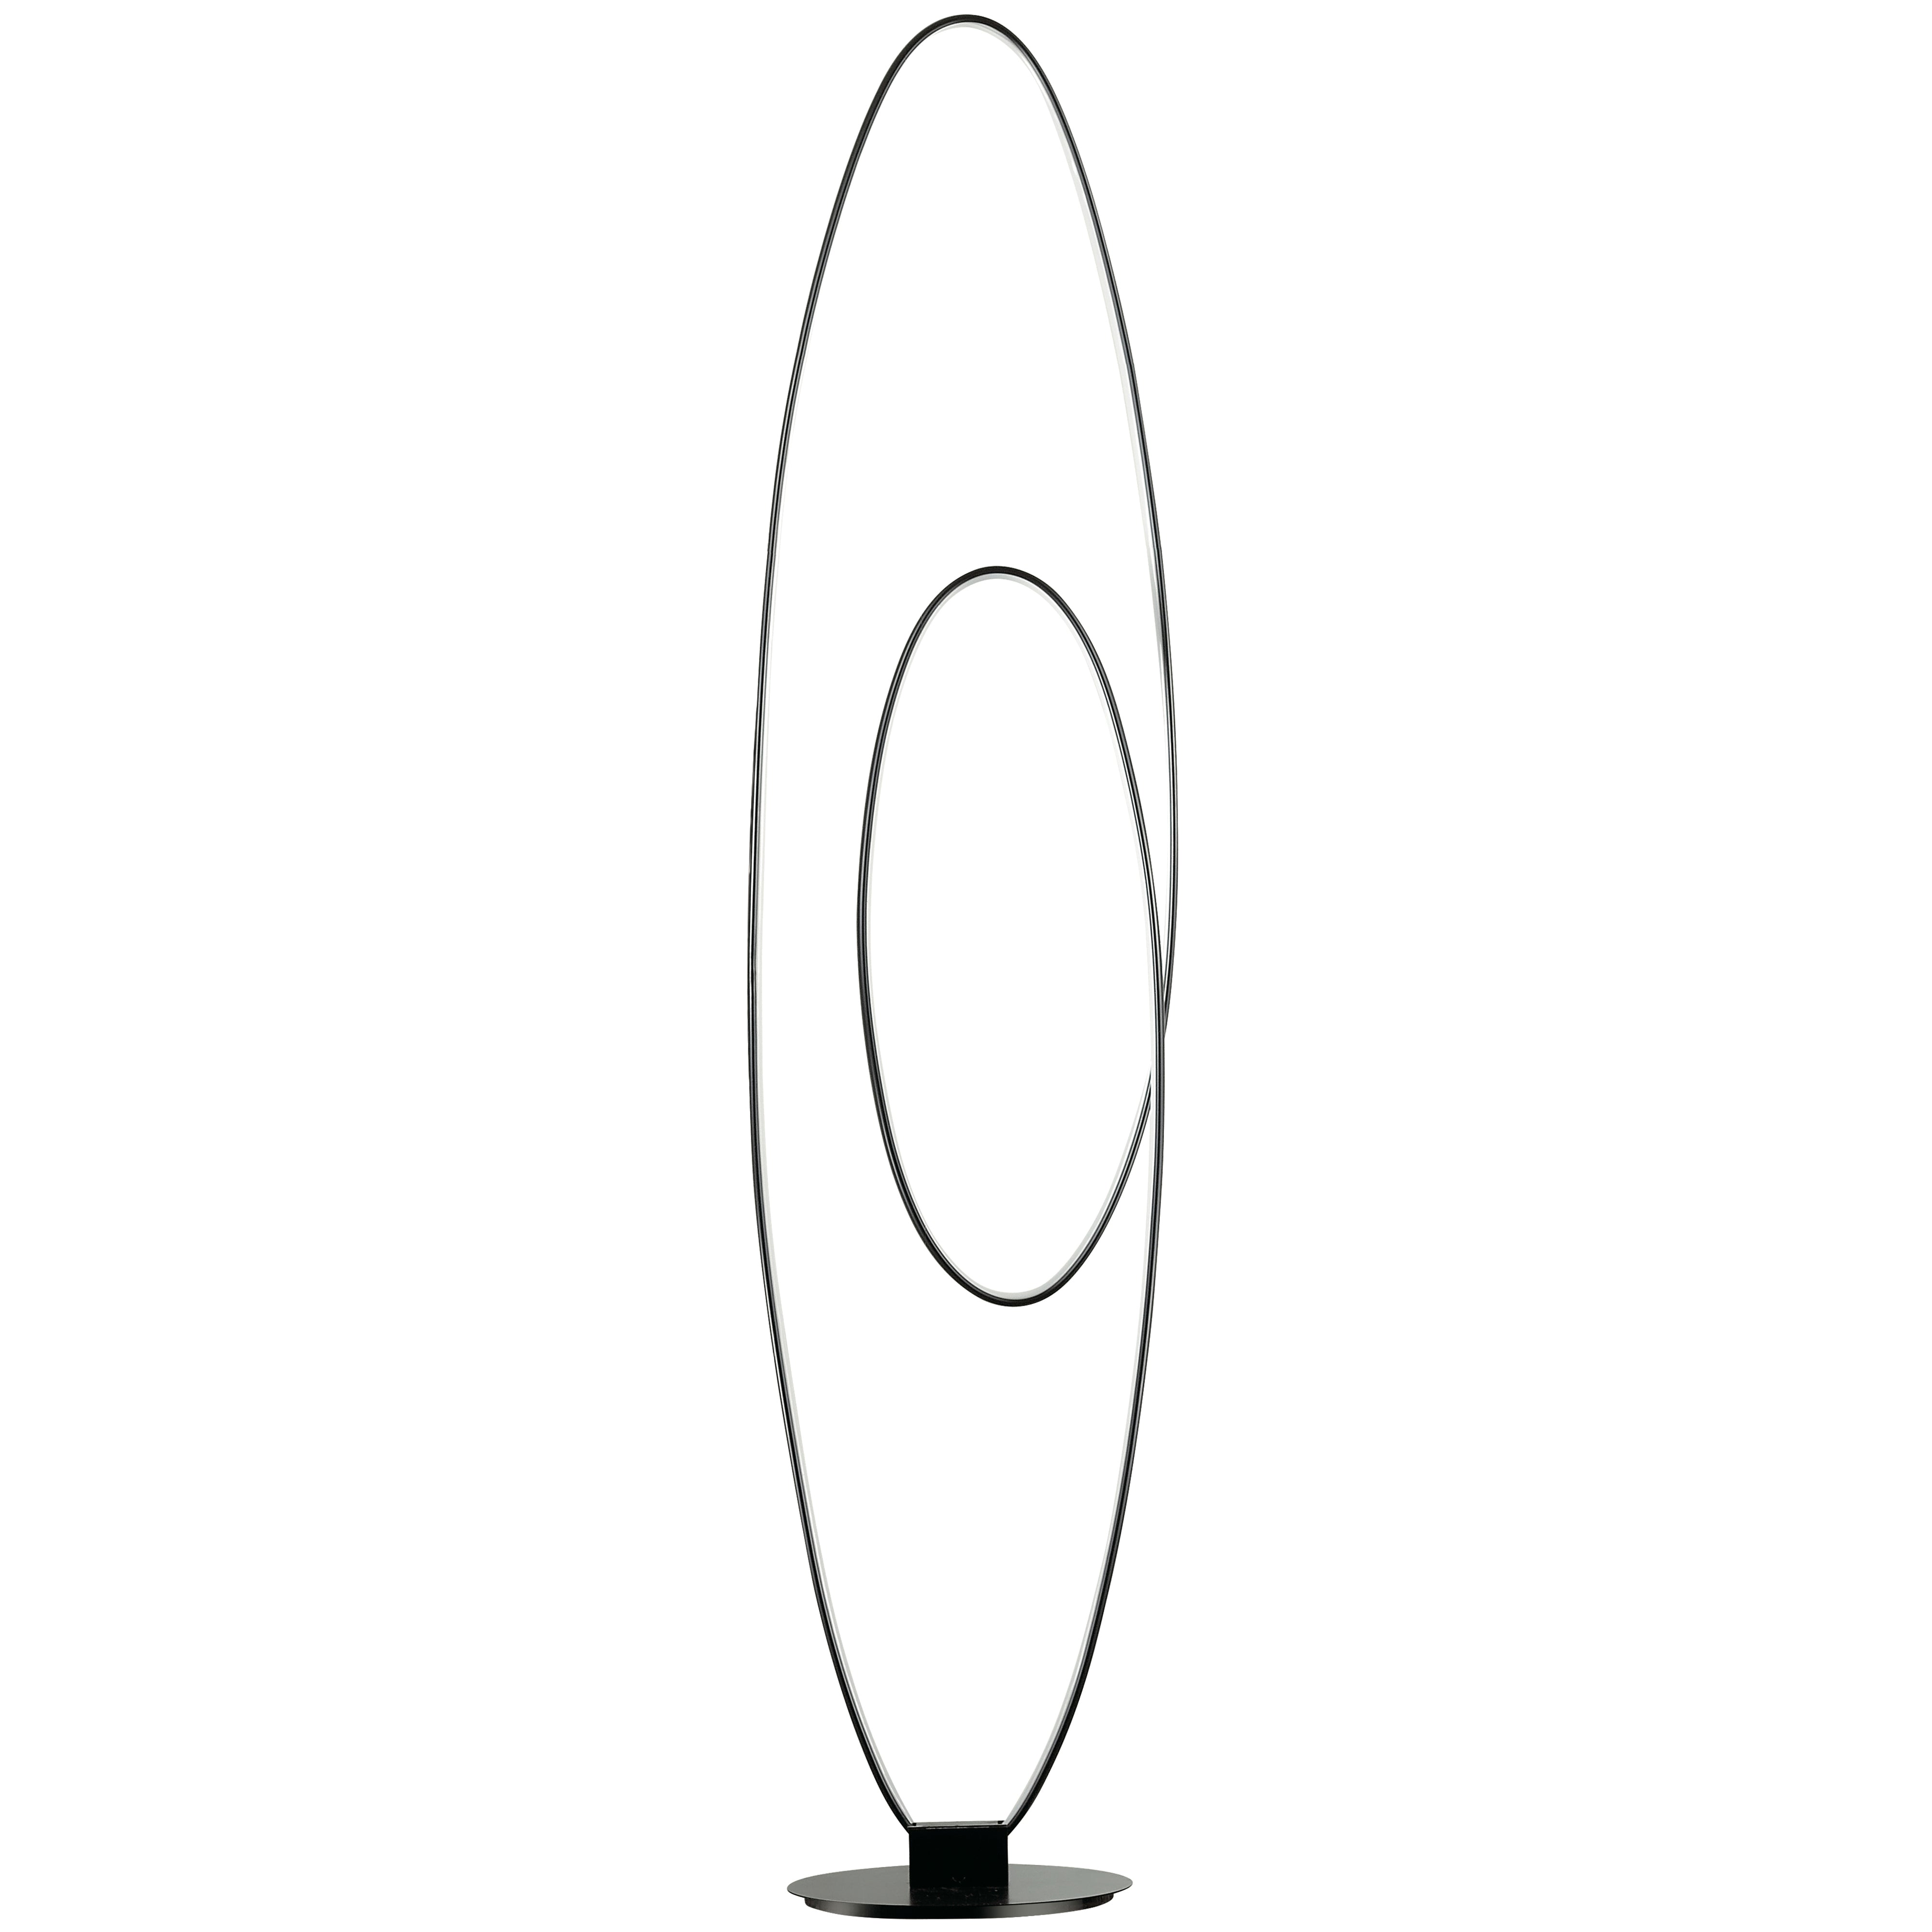 PHOENIX Lampe sur pied Noir DEL INTÉGRÉ - PHX-6060LEDF-MB | DAINOLITE